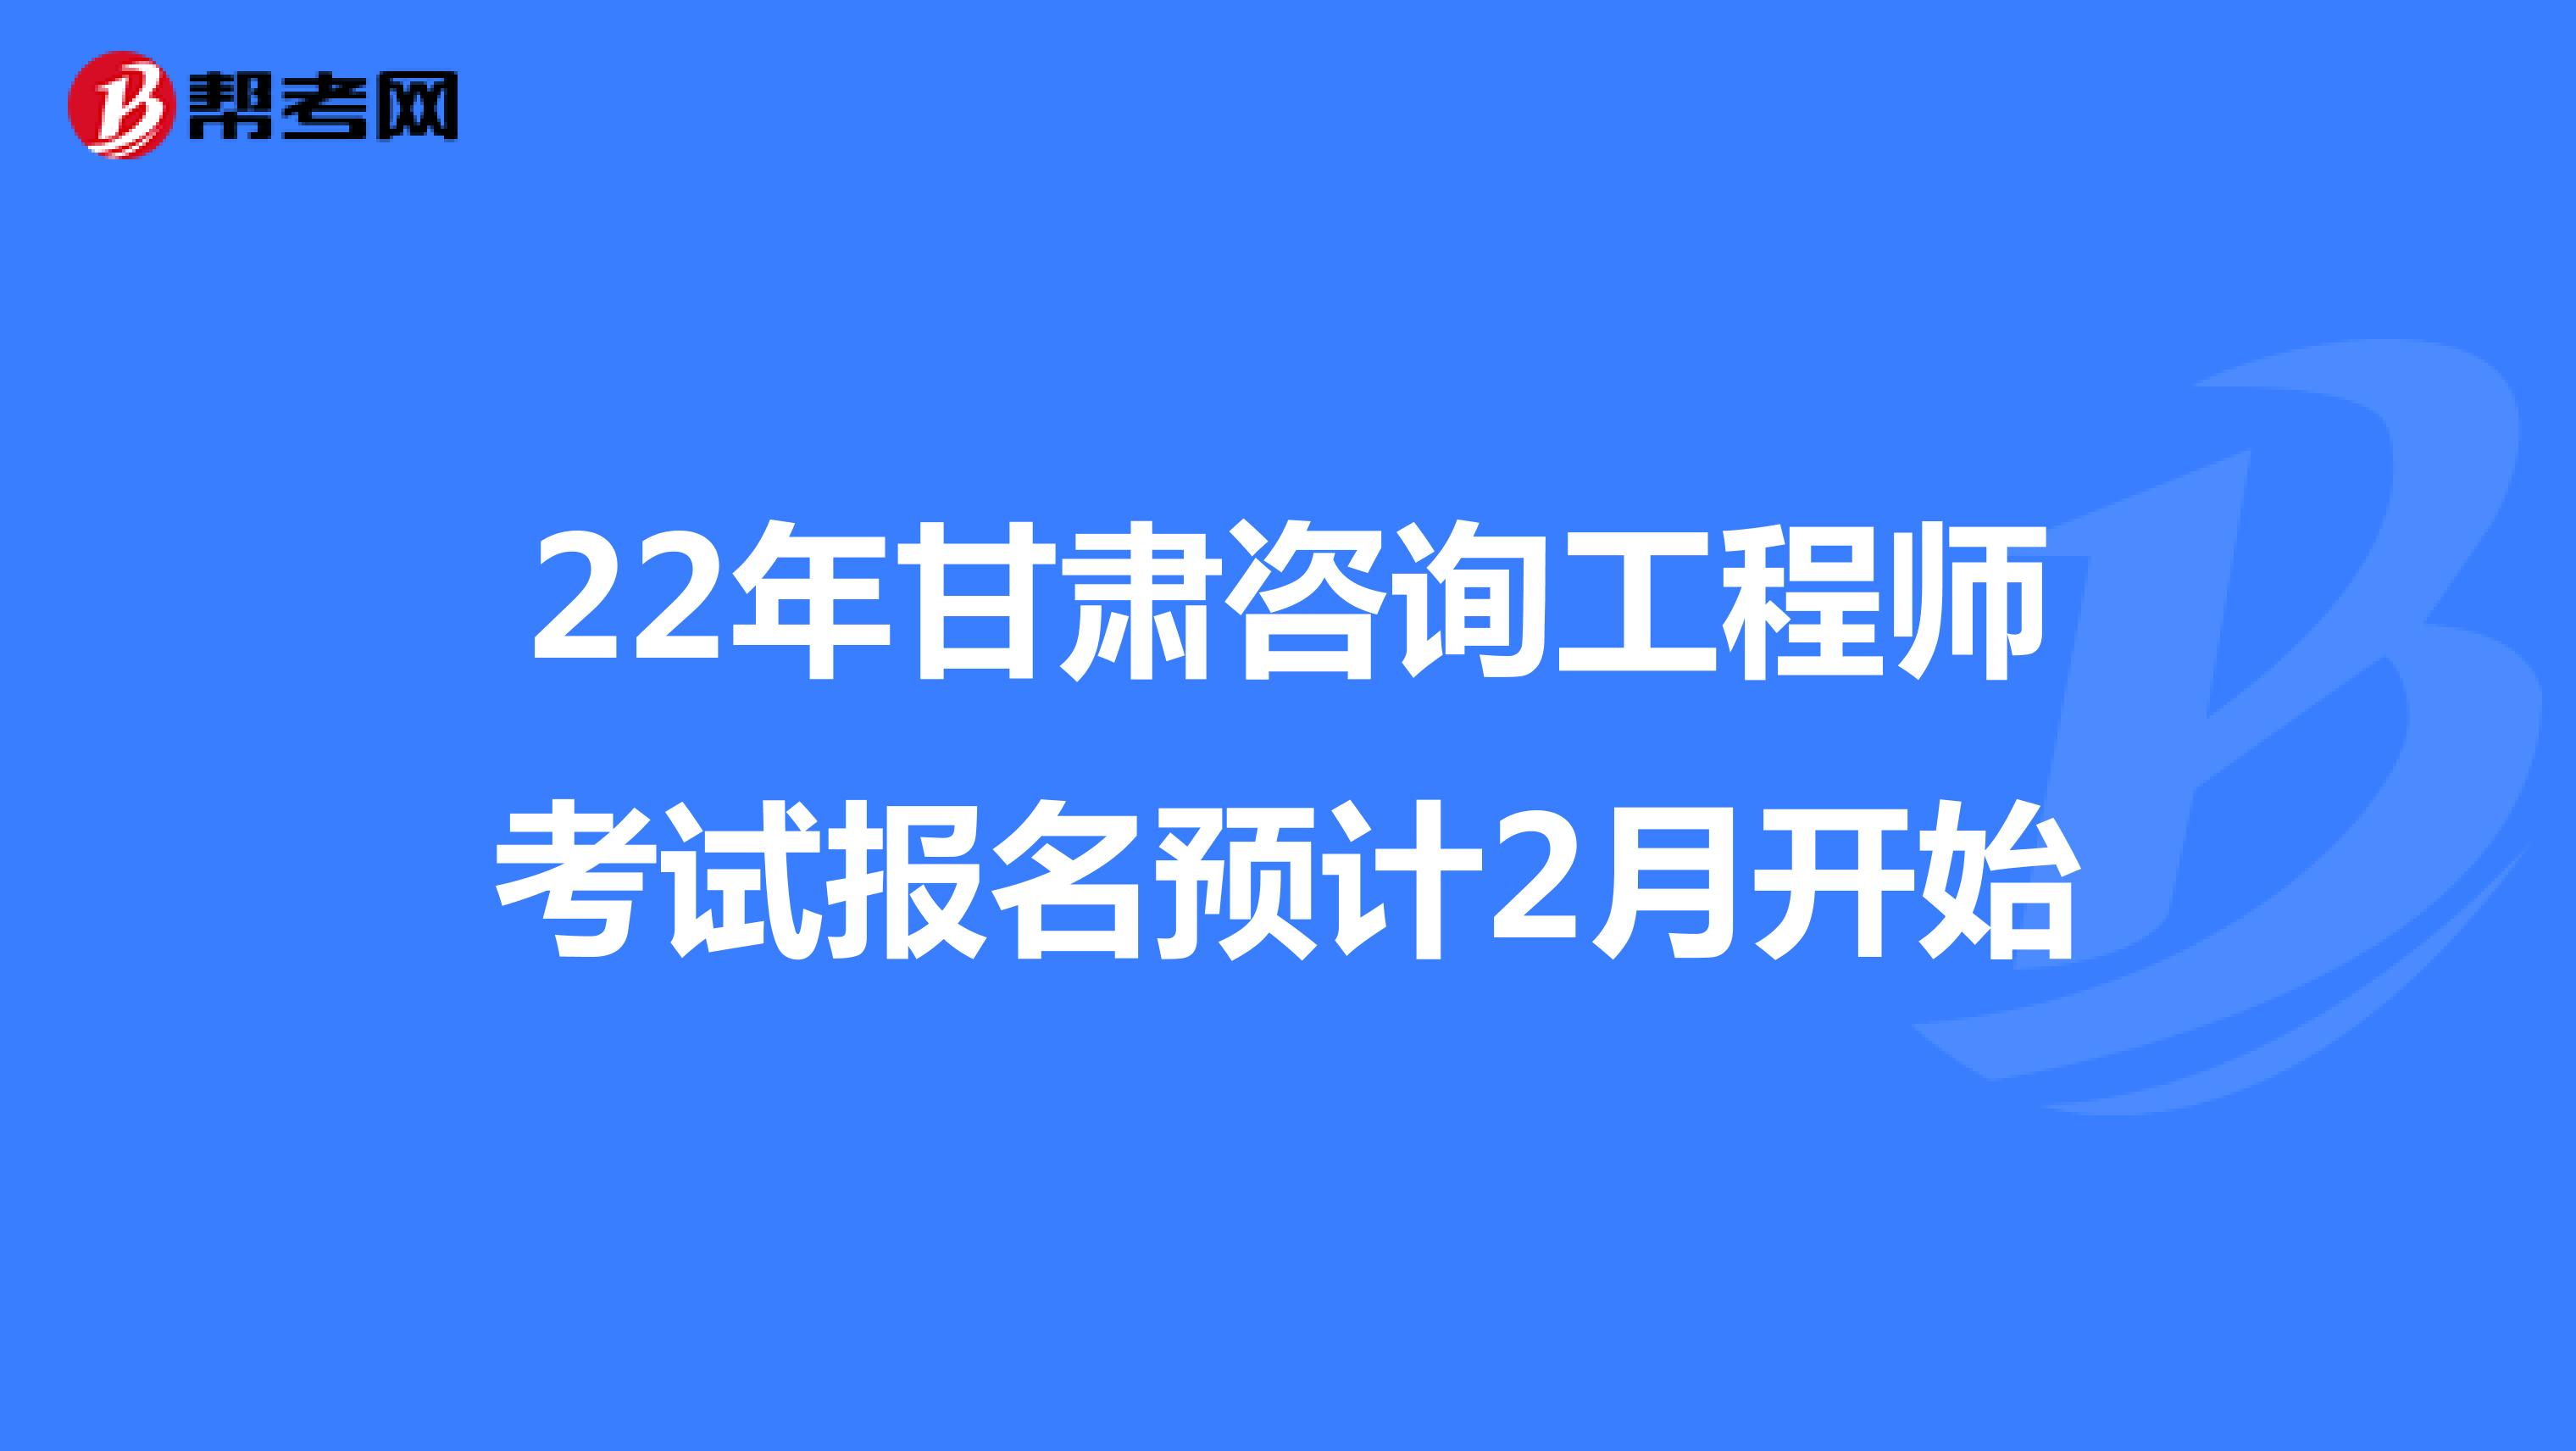 22年甘肃咨询工程师考试报名预计2月开始